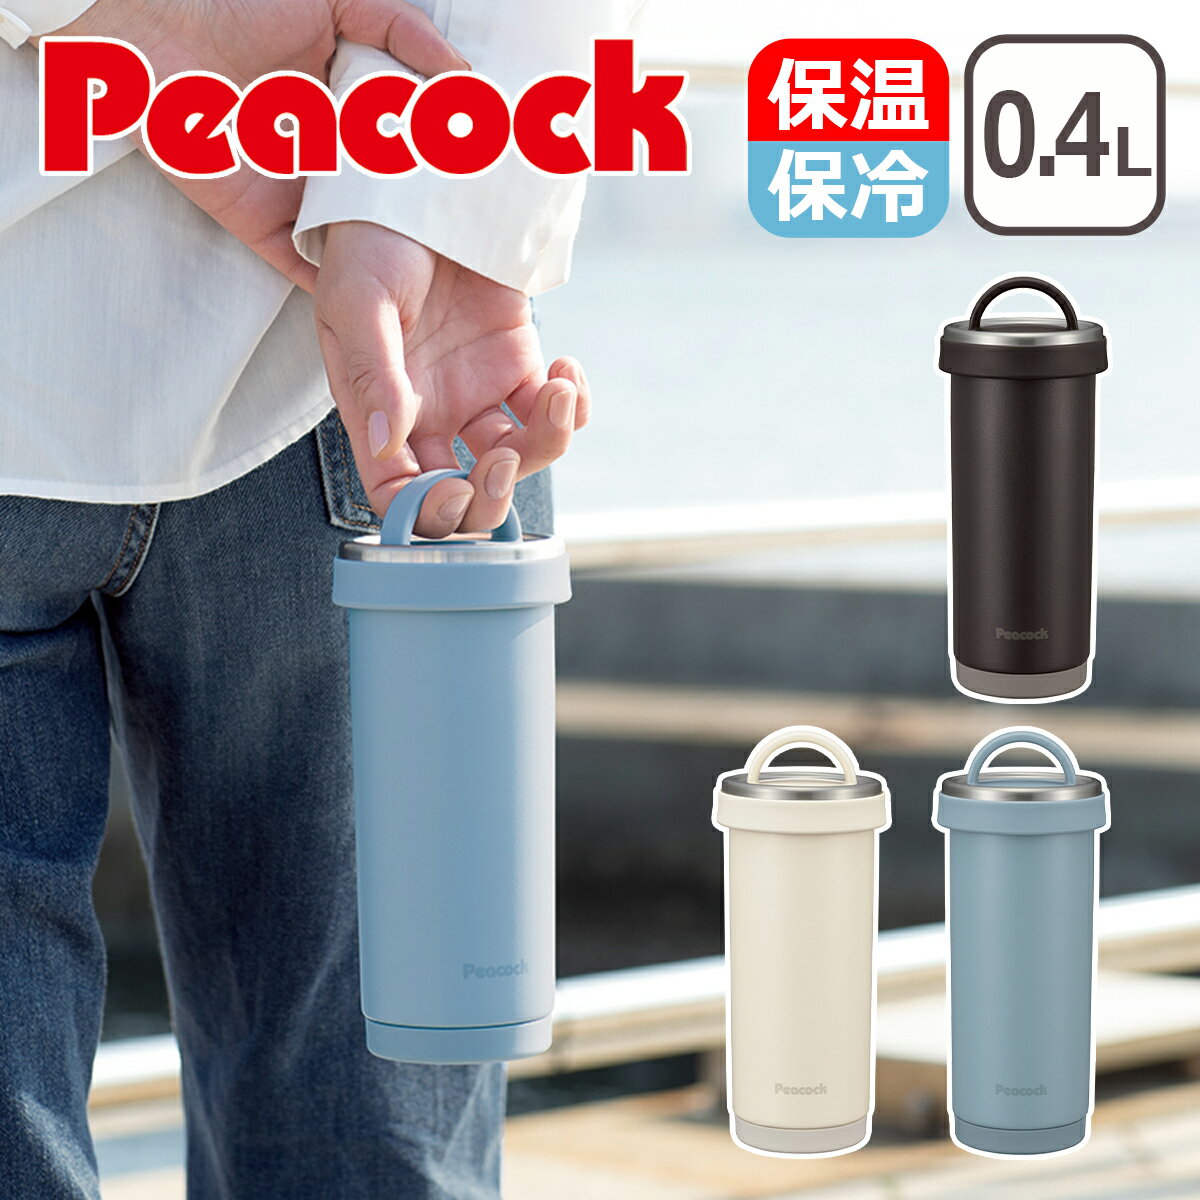 【クーポン4種あり】ピーコック Peacock タンブラーボトル 0.4L 蓋付きマグボトル 水筒 マグ タンブラーボトル ステンレスボトル 400ml 保温保冷 ピーコック魔法瓶 AKS-R40 ギフト のし可